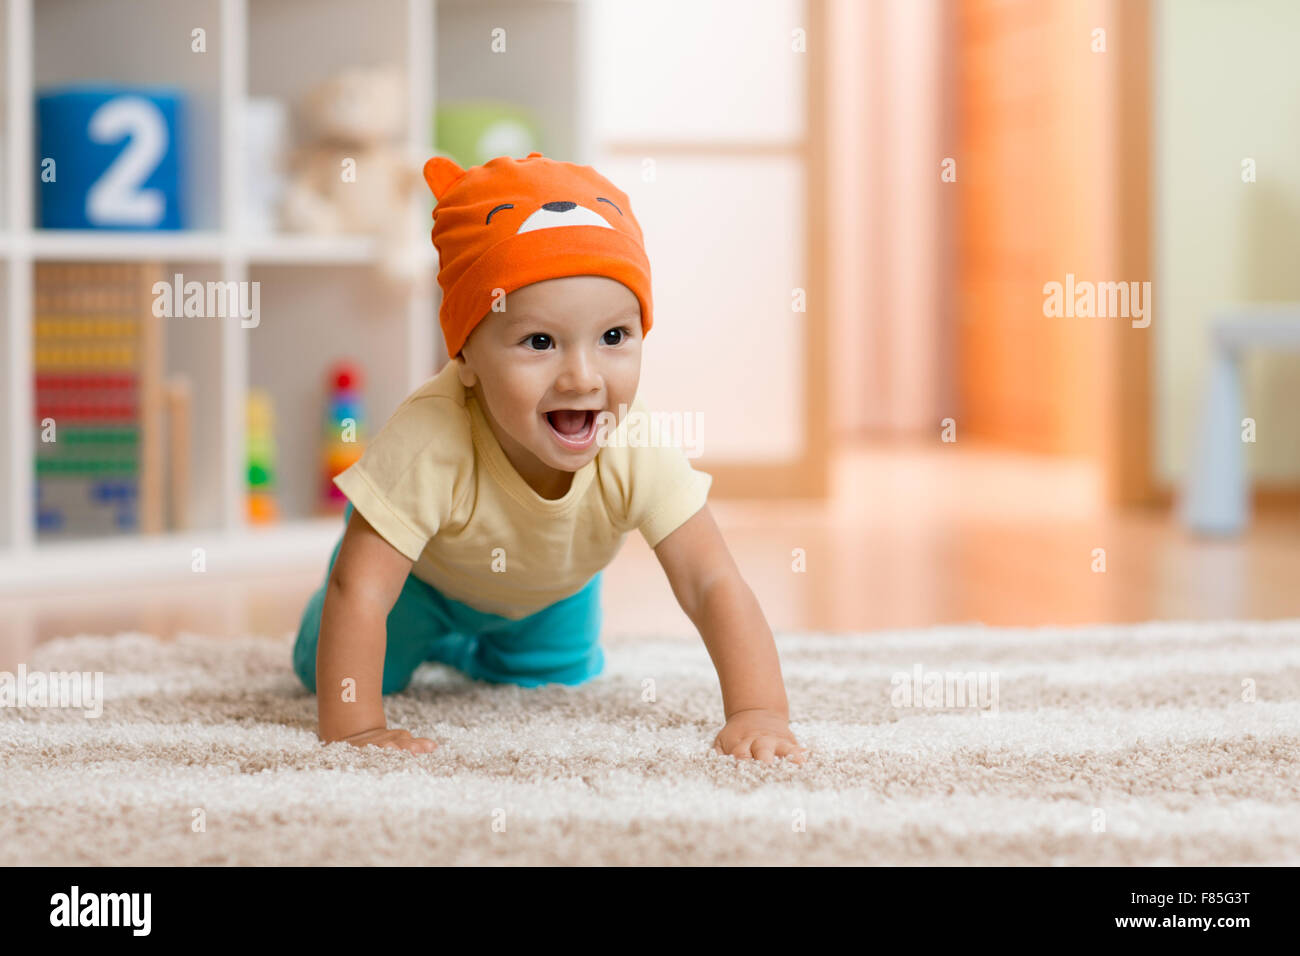 kriechende Kind oder Kind zu Hause auf Teppich Stockfoto